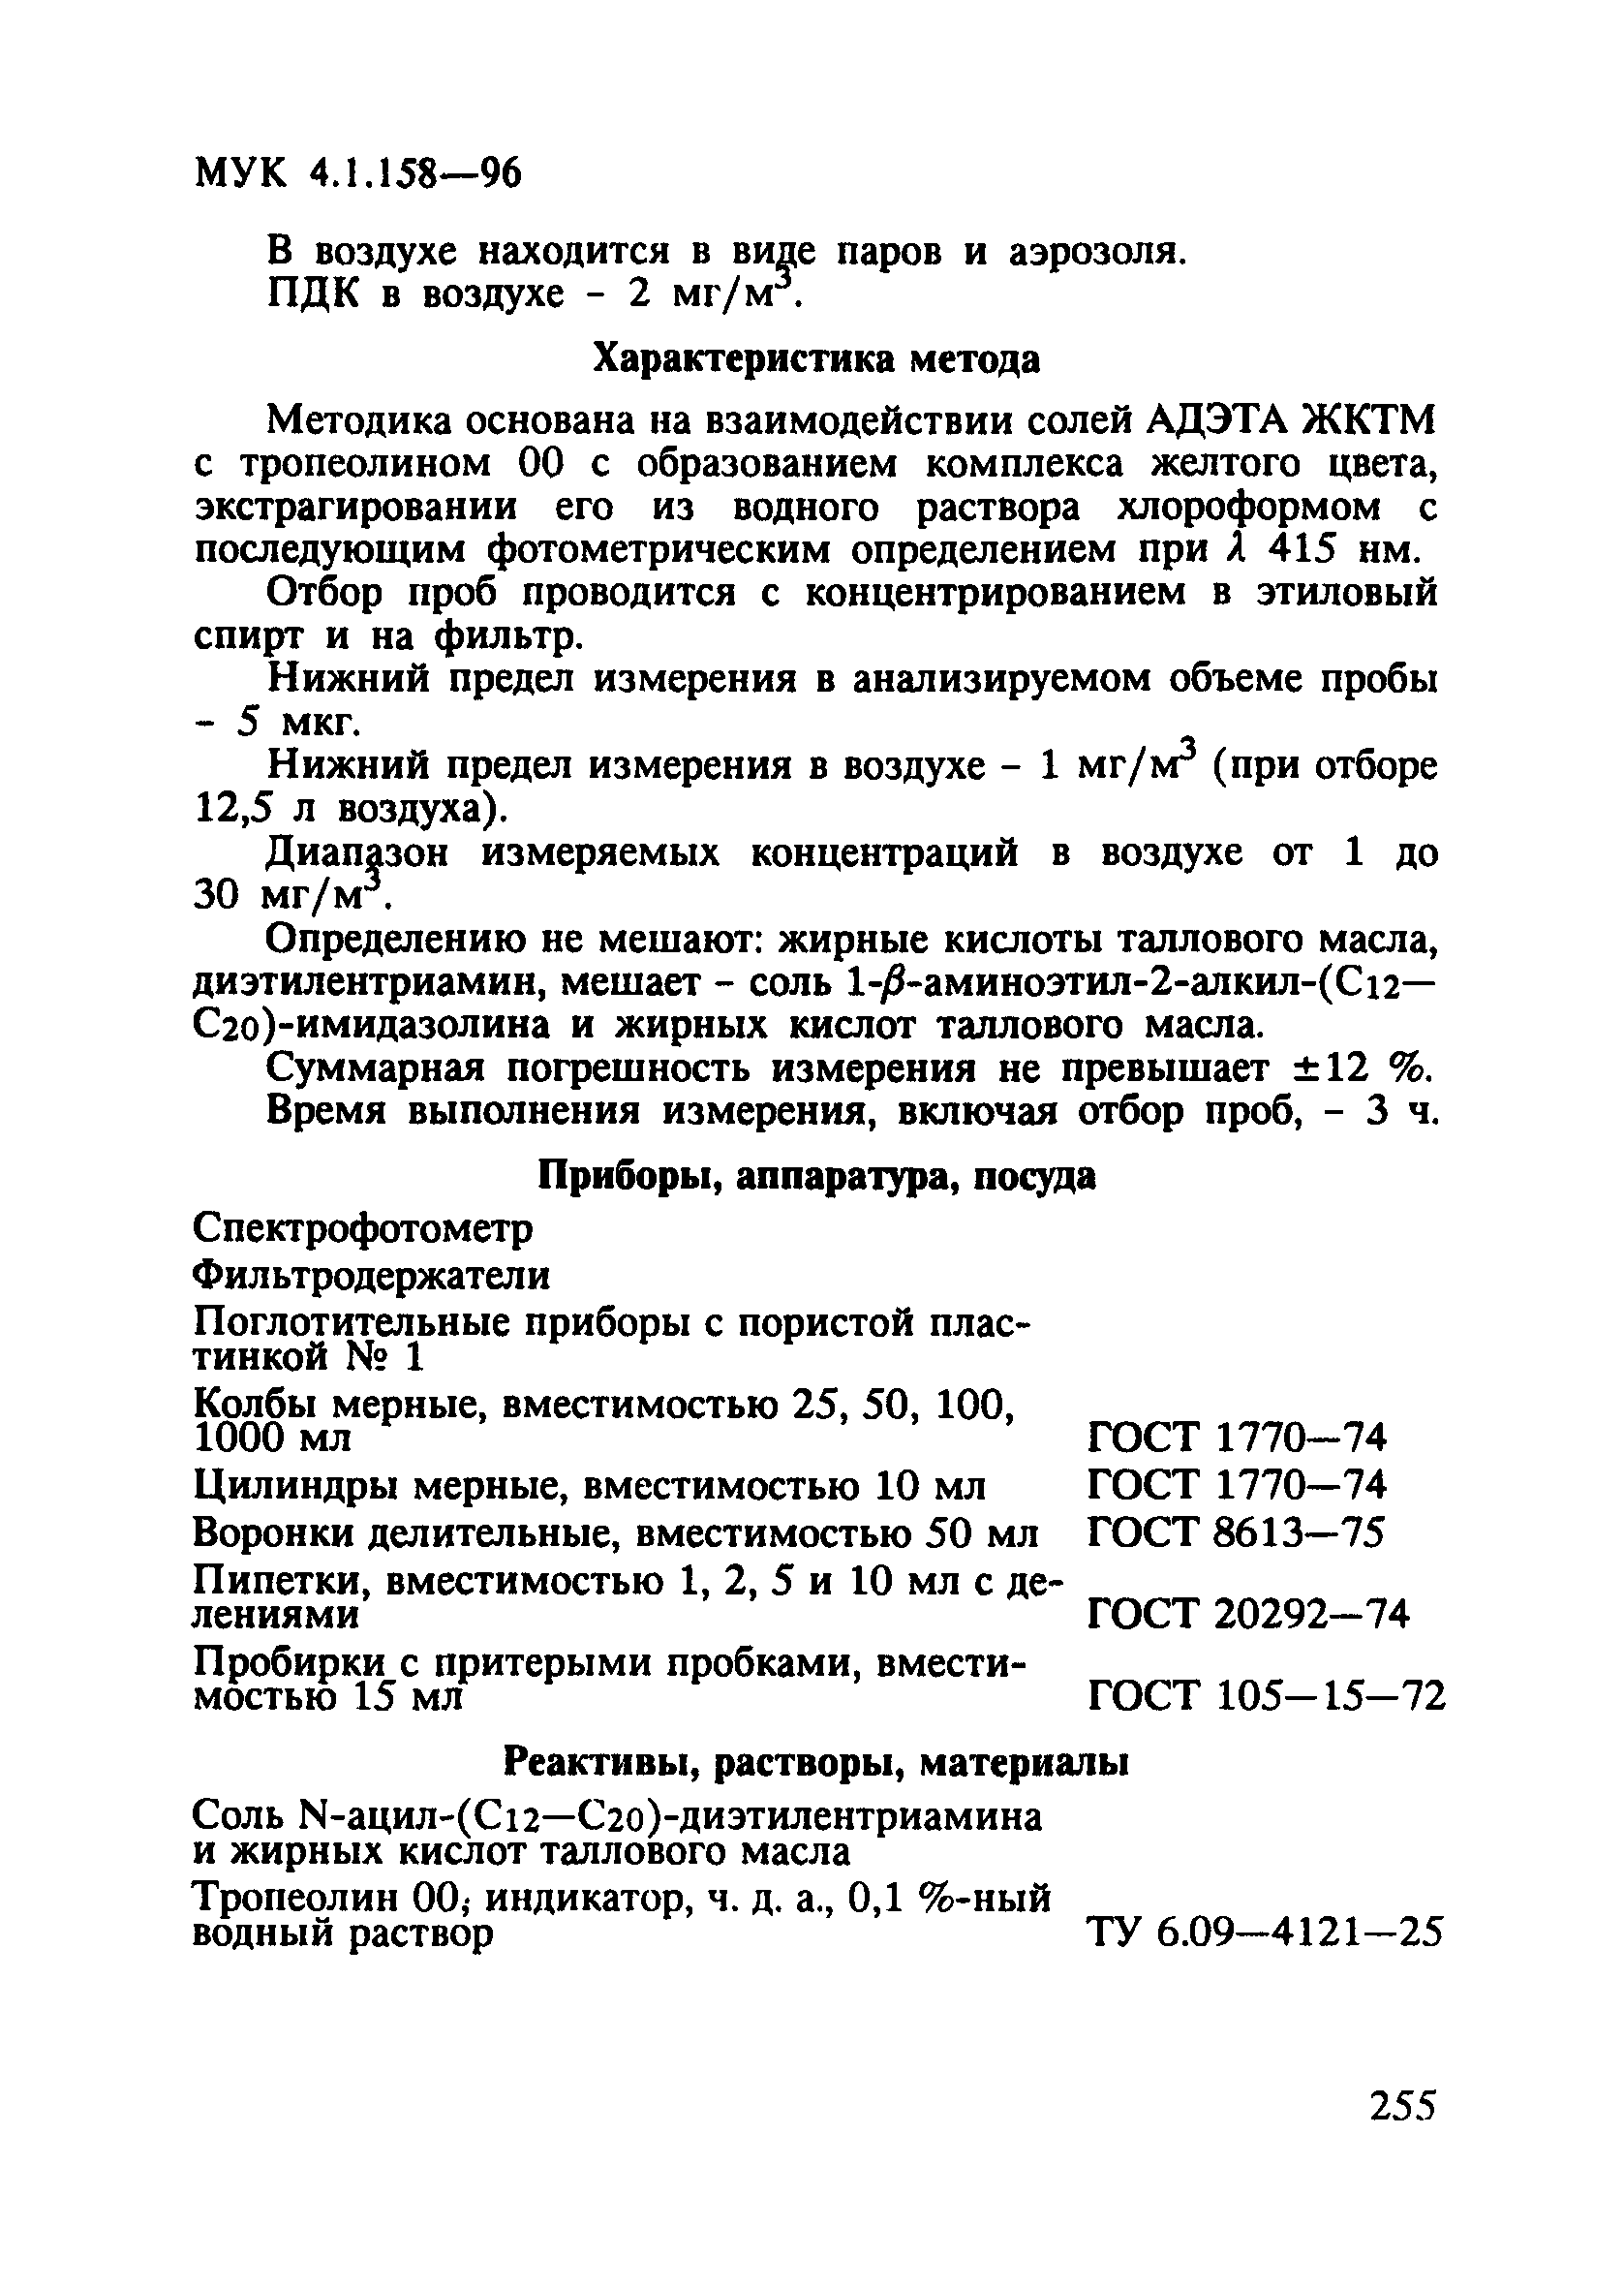 МУК 4.1.158-96